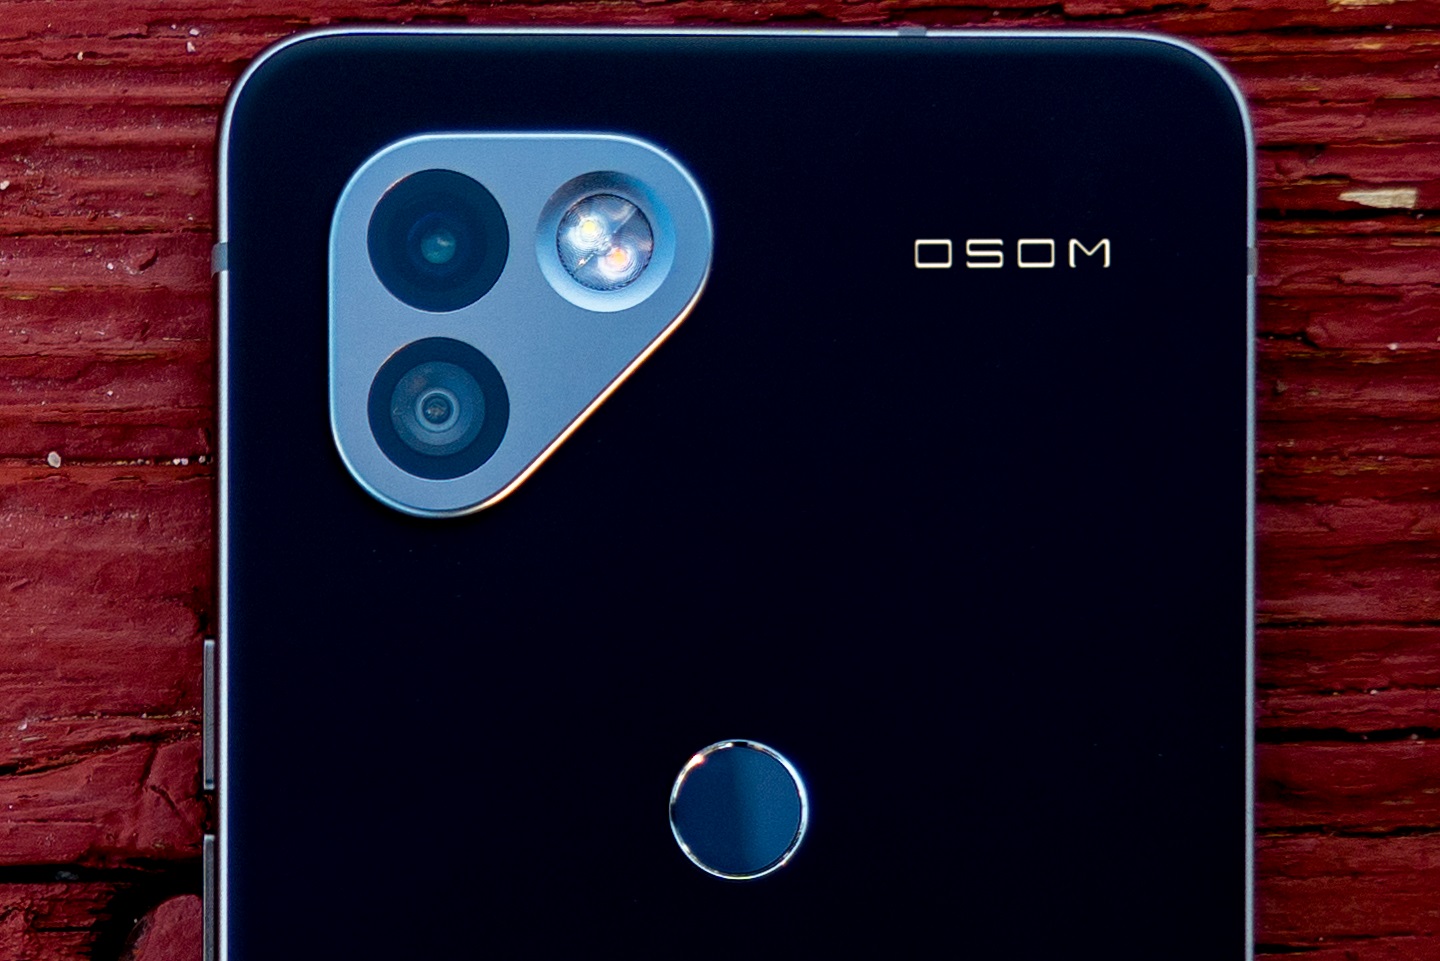 OSOM OV1 es el nuevo teléfono inteligente de los antiguos desarrolladores de Essential Phone con un enfoque en la privacidad